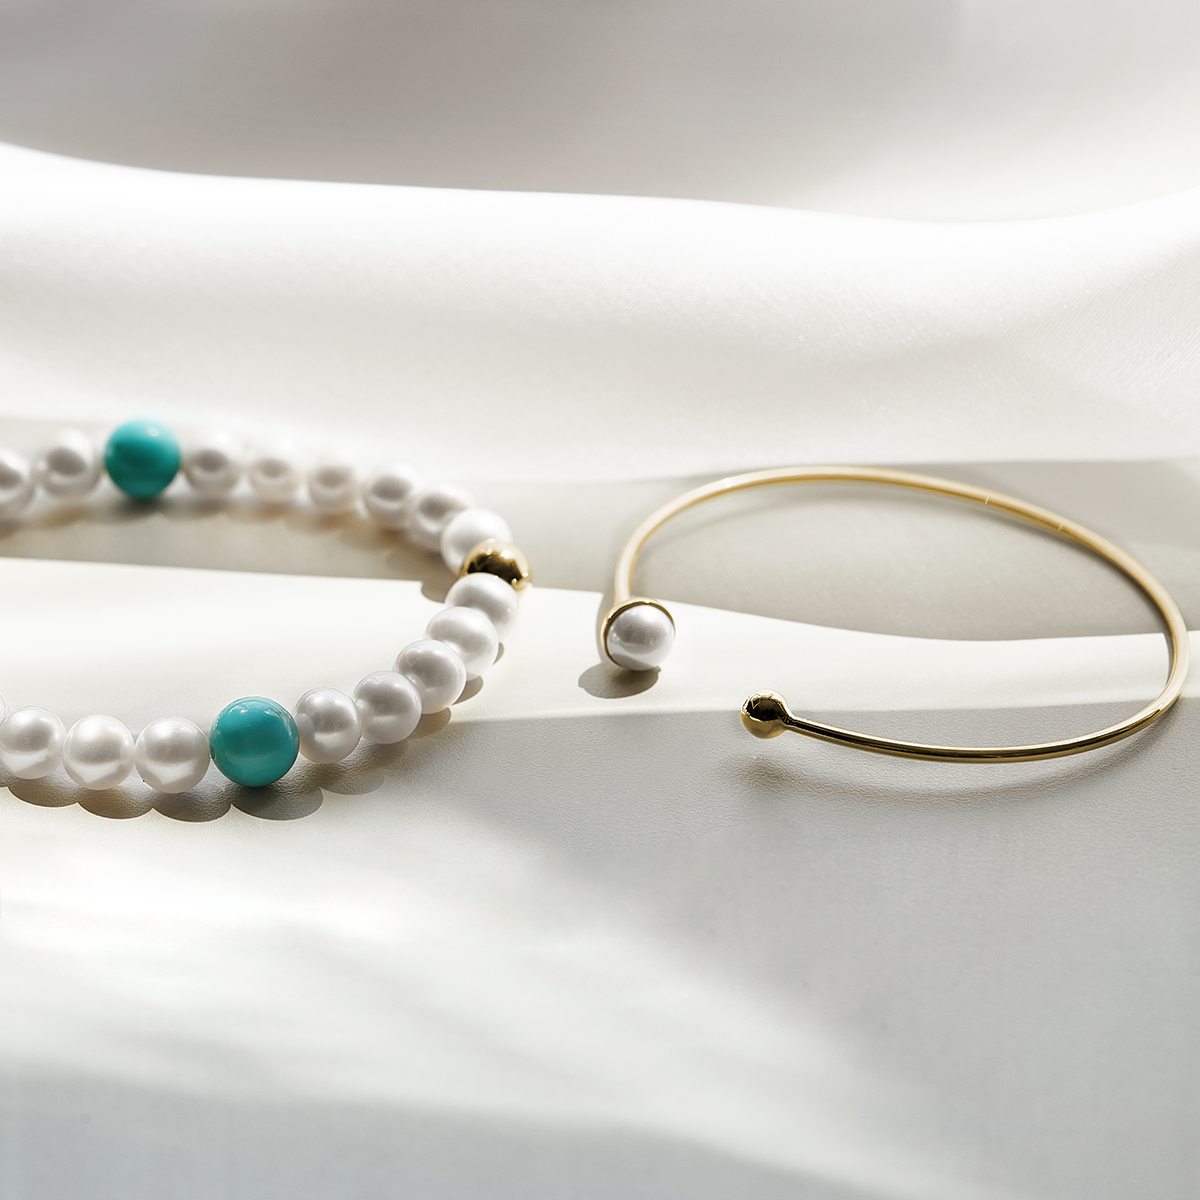 Für die klassische Perlenkette ist Frau niemals zu alt und daher auch mit 59plus noch ein wunderbares Geschenk.